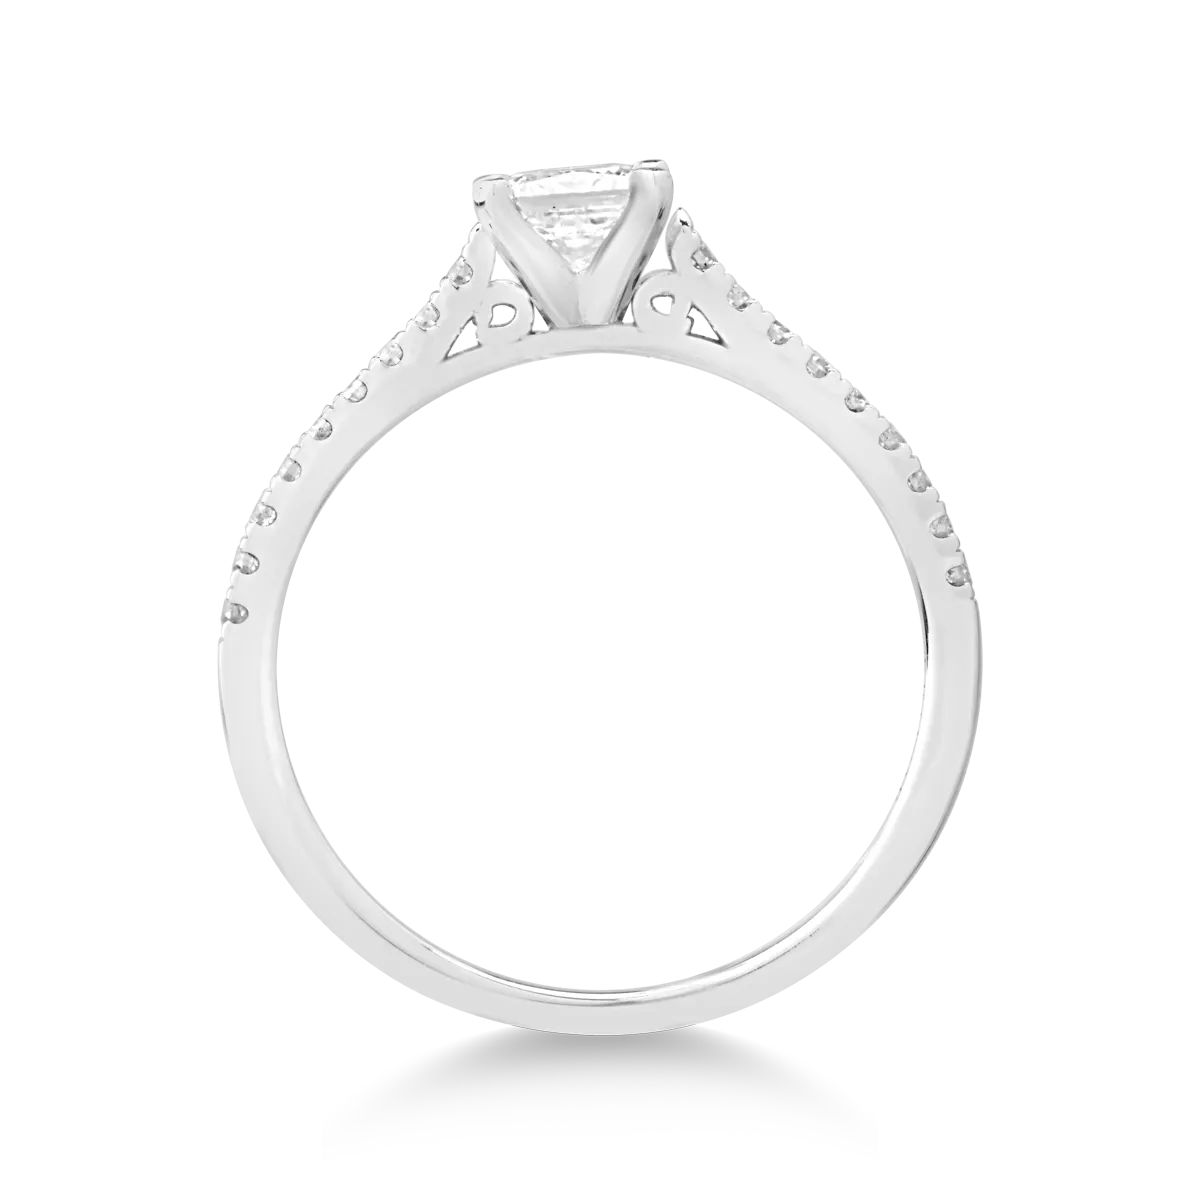 18K fehérarany eljegyzési gyűrű 0.8ct gyémánttal és 0.18ct gyémántokkal